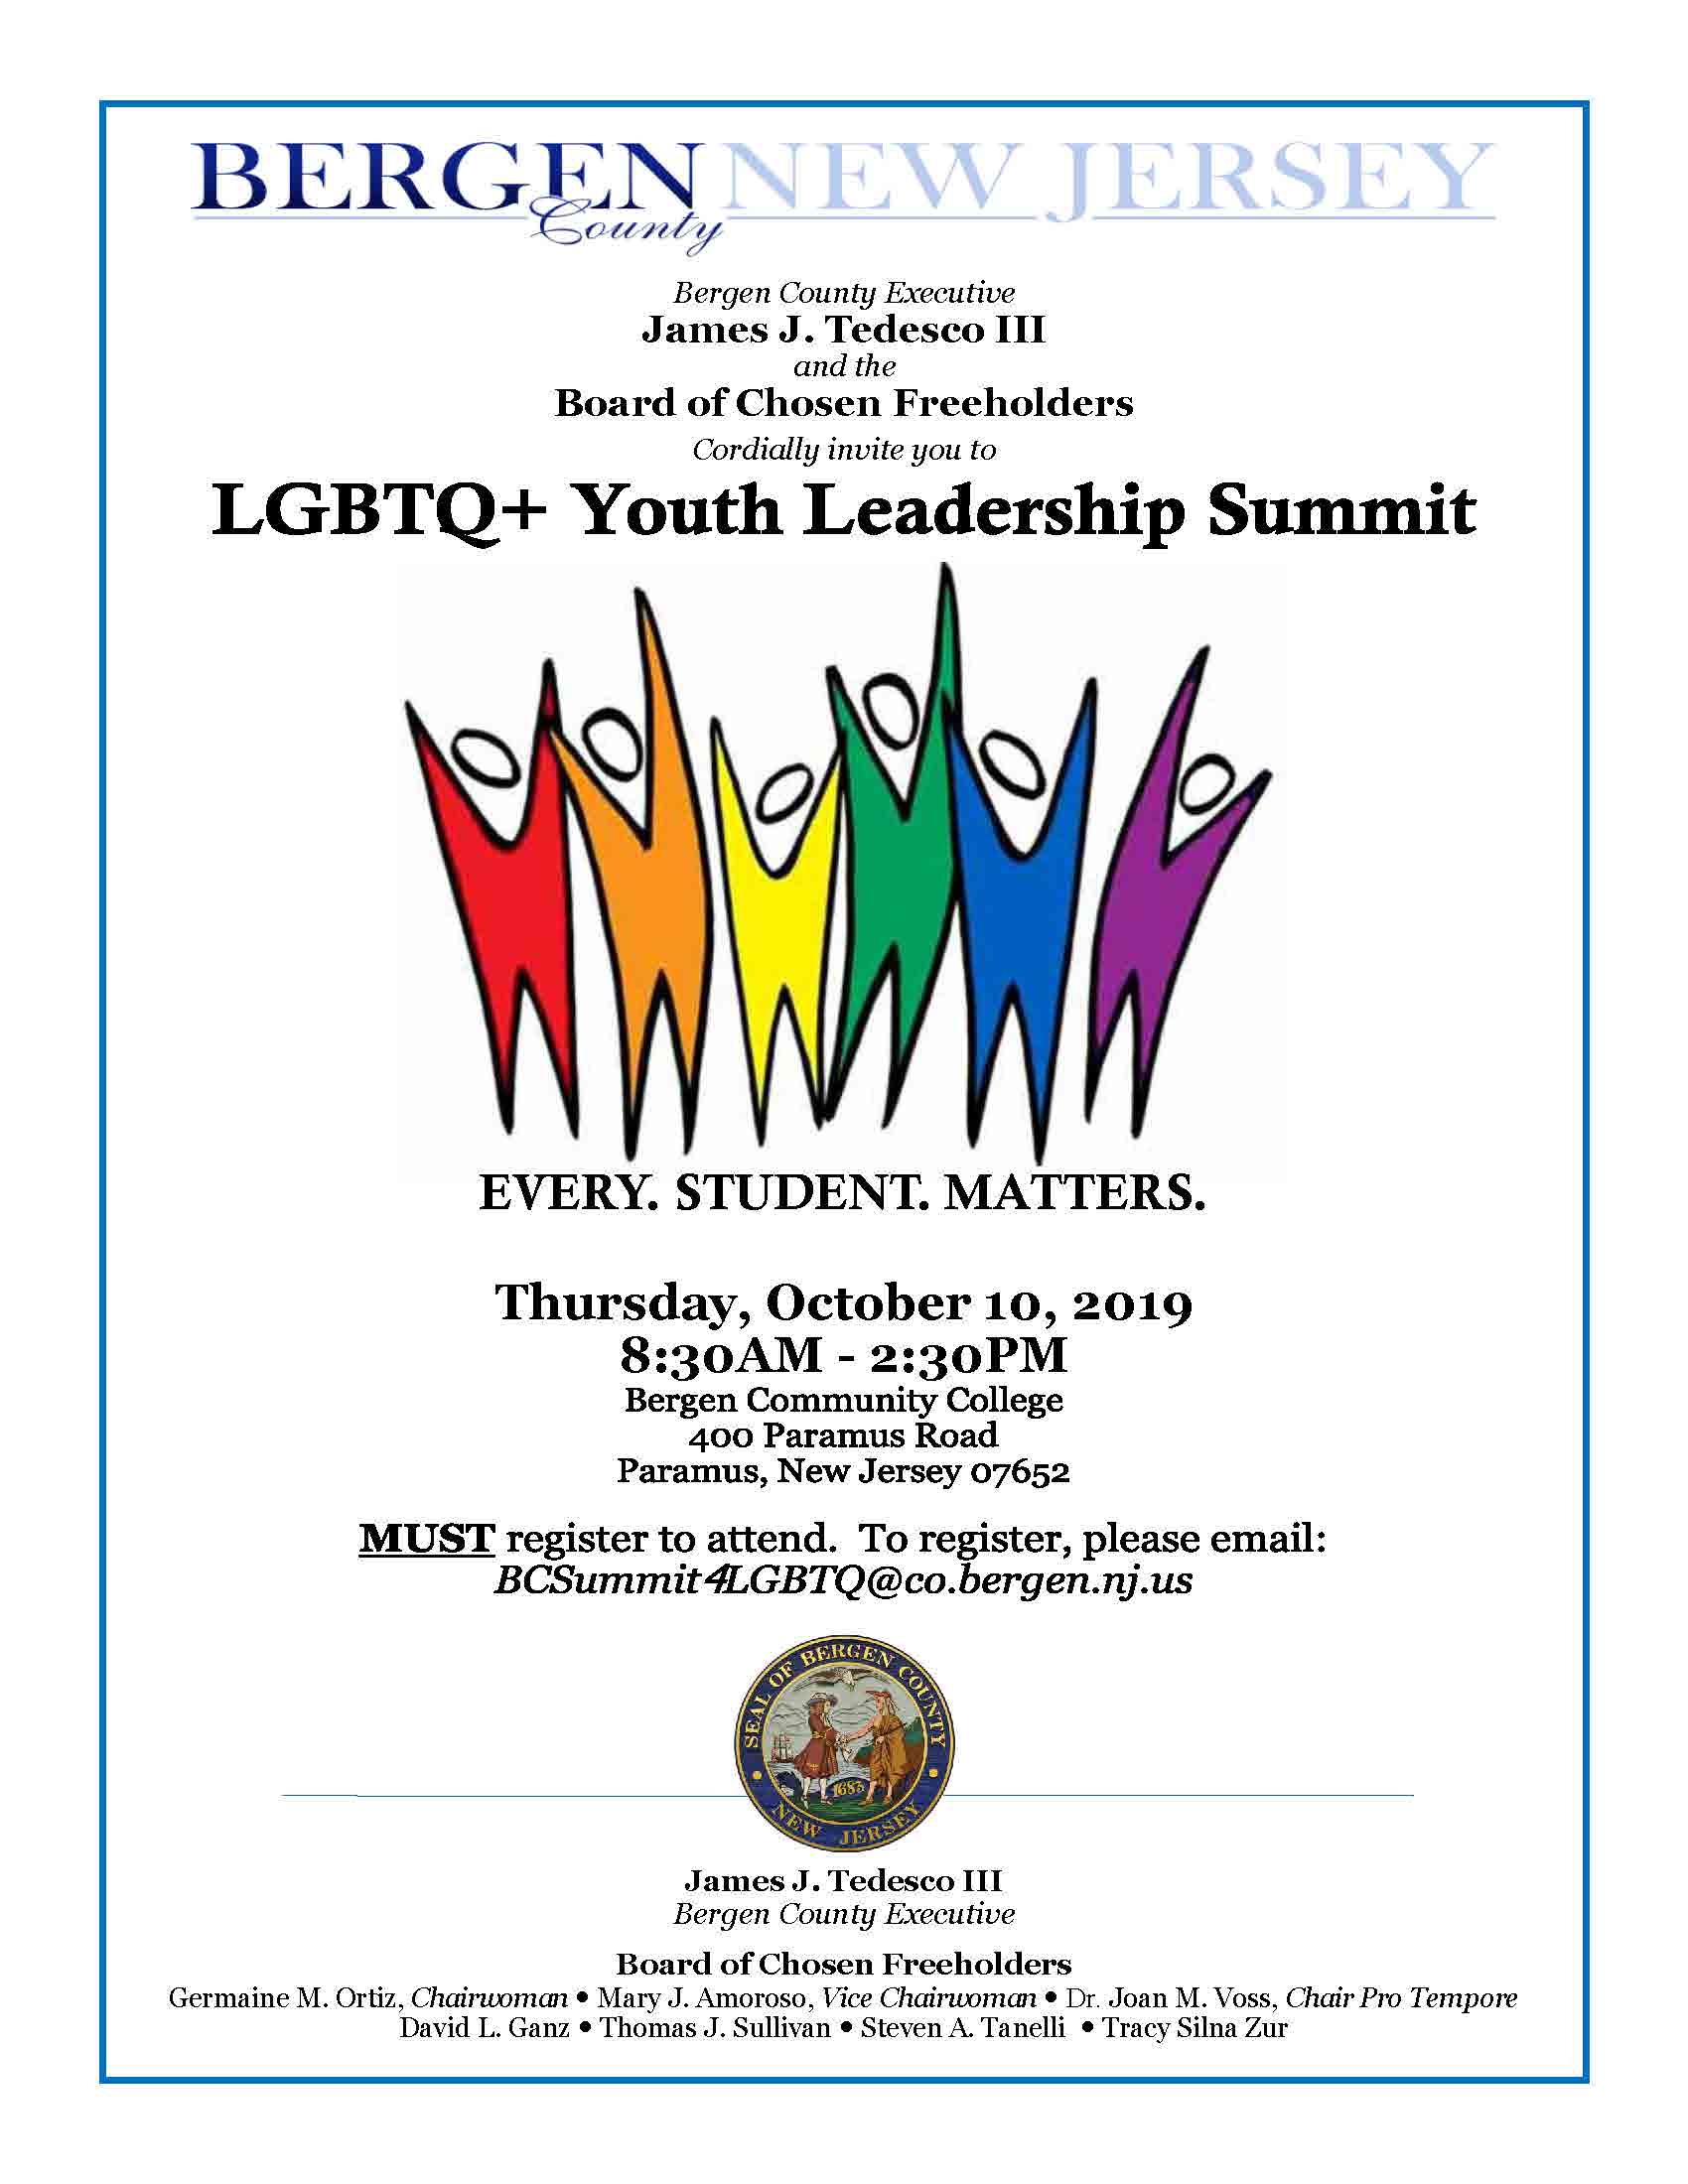 LGBTQ Leadership Summit Flyer 2019